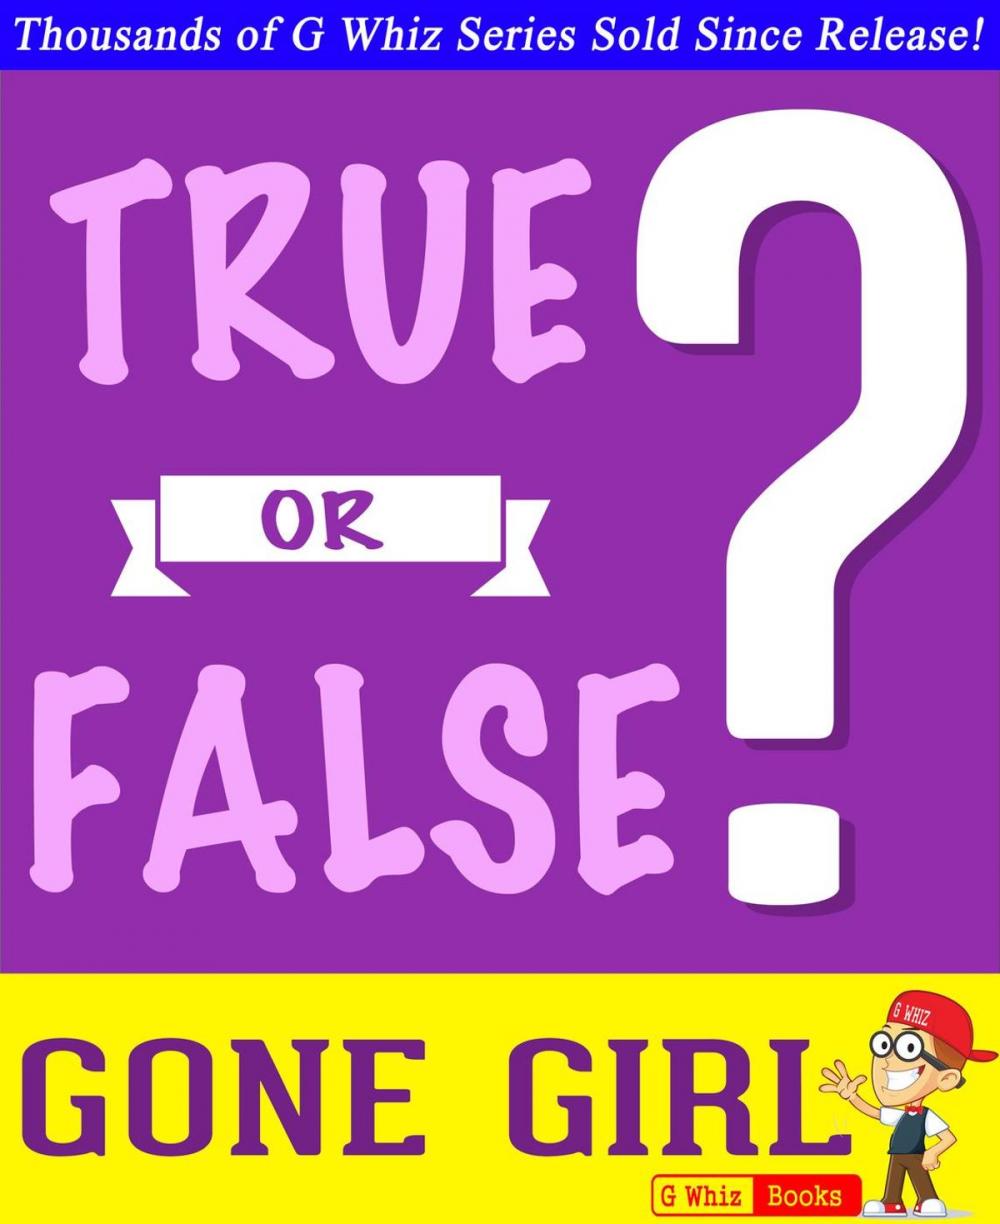 Big bigCover of Gone Girl - True or False?